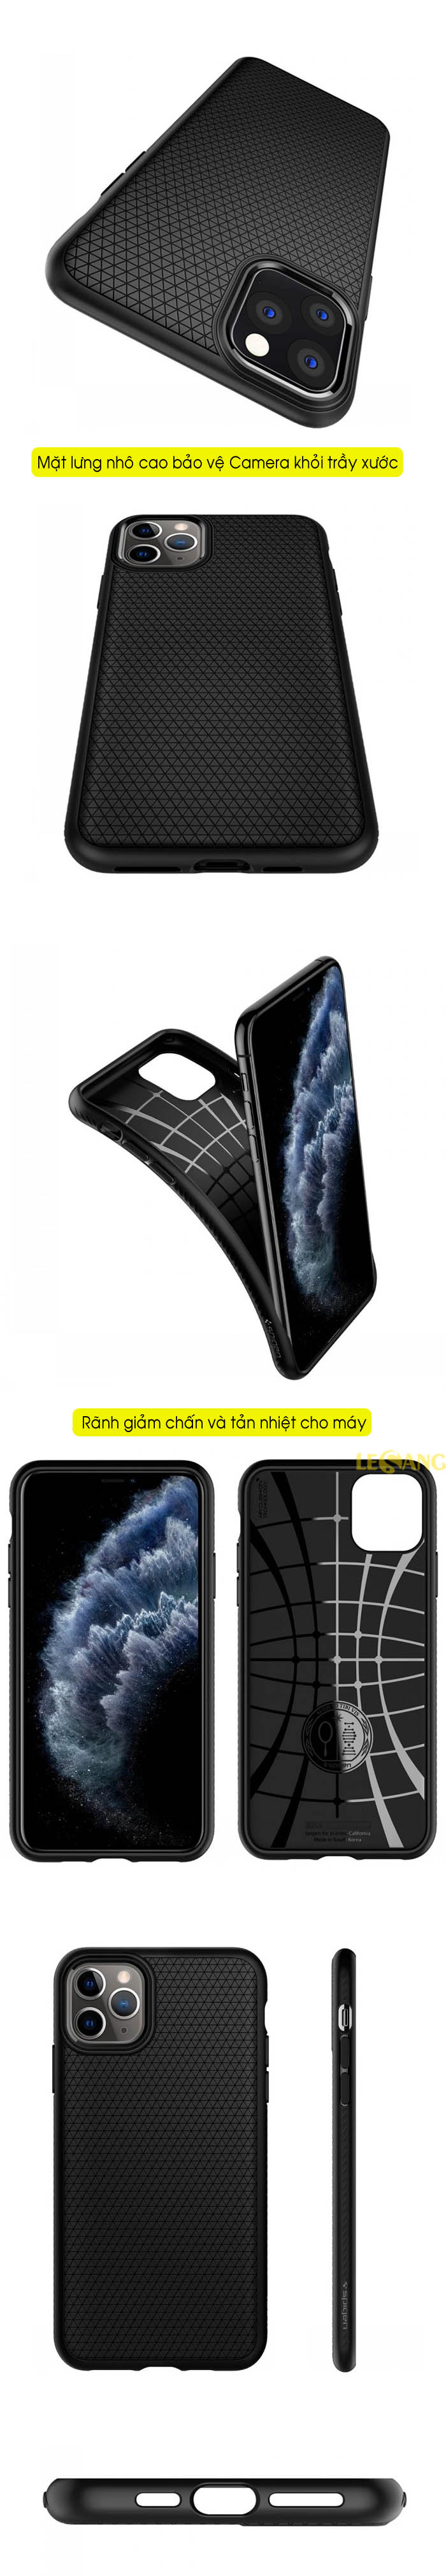 Ốp lưng iPhone 11 Pro Max Spigen Liquid Air Armor 6